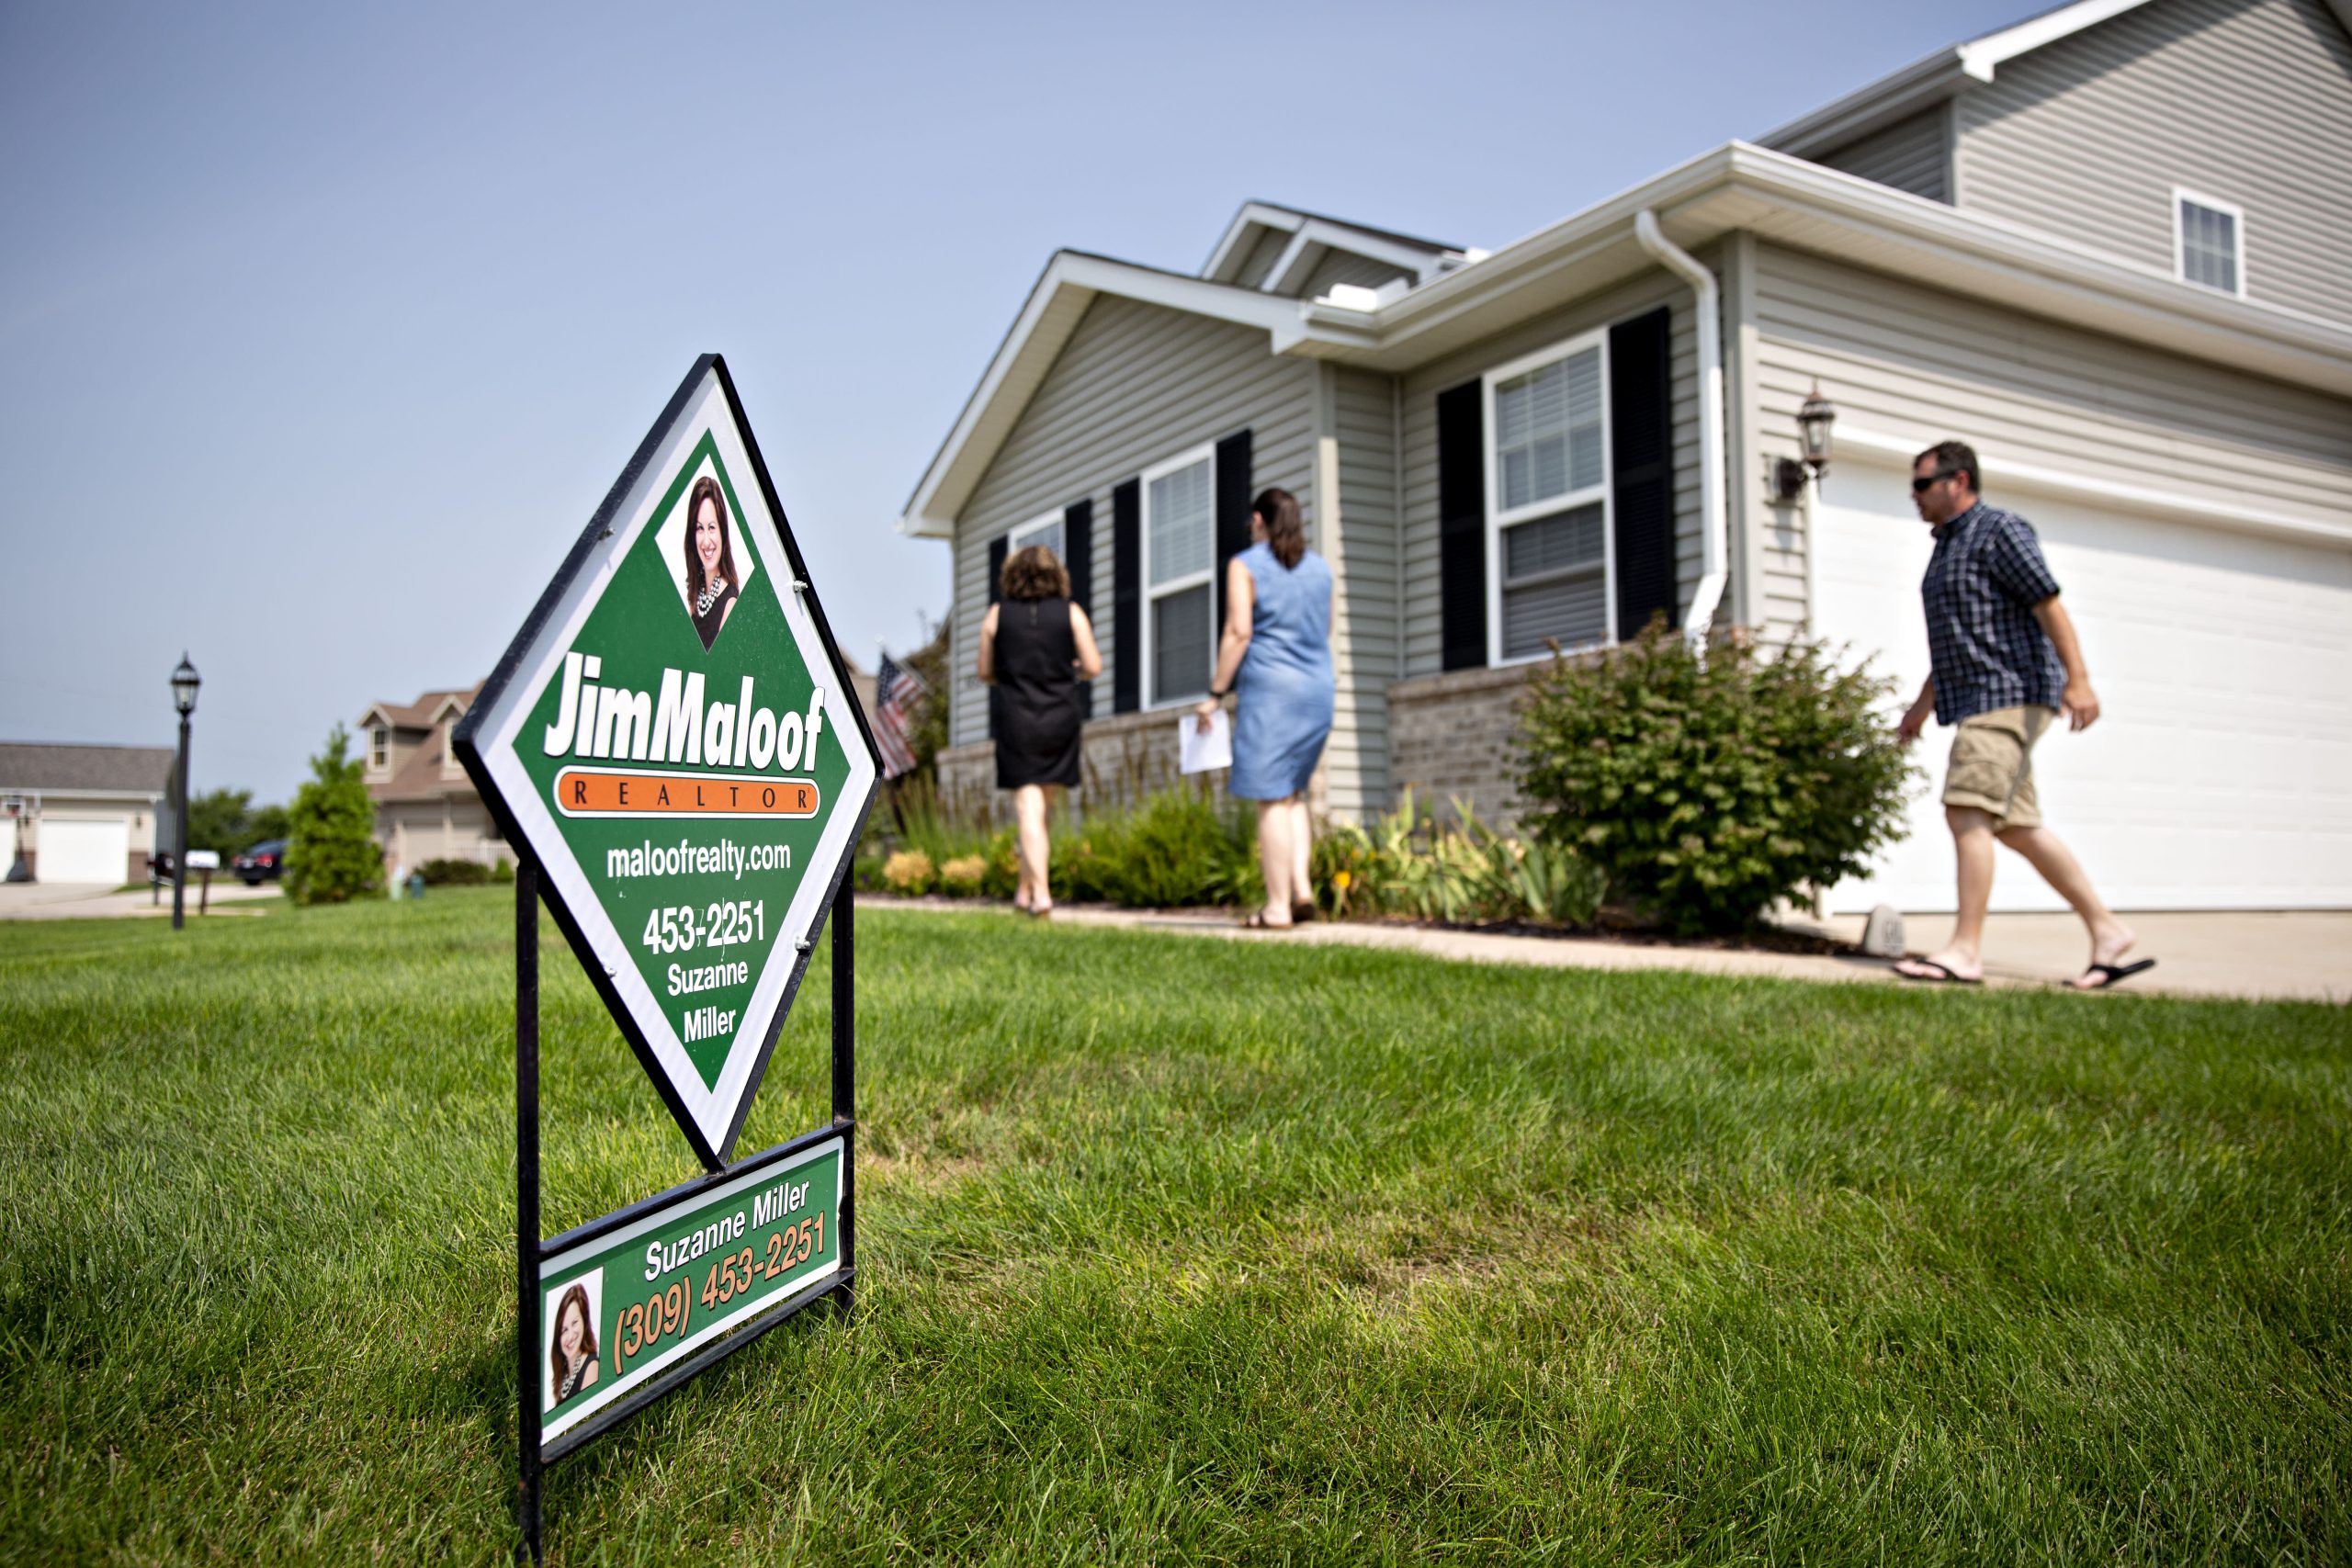 La demanda de refinanciamiento hipotecario se desplomó un 15% la semana pasada, pero ahora podría revertirse